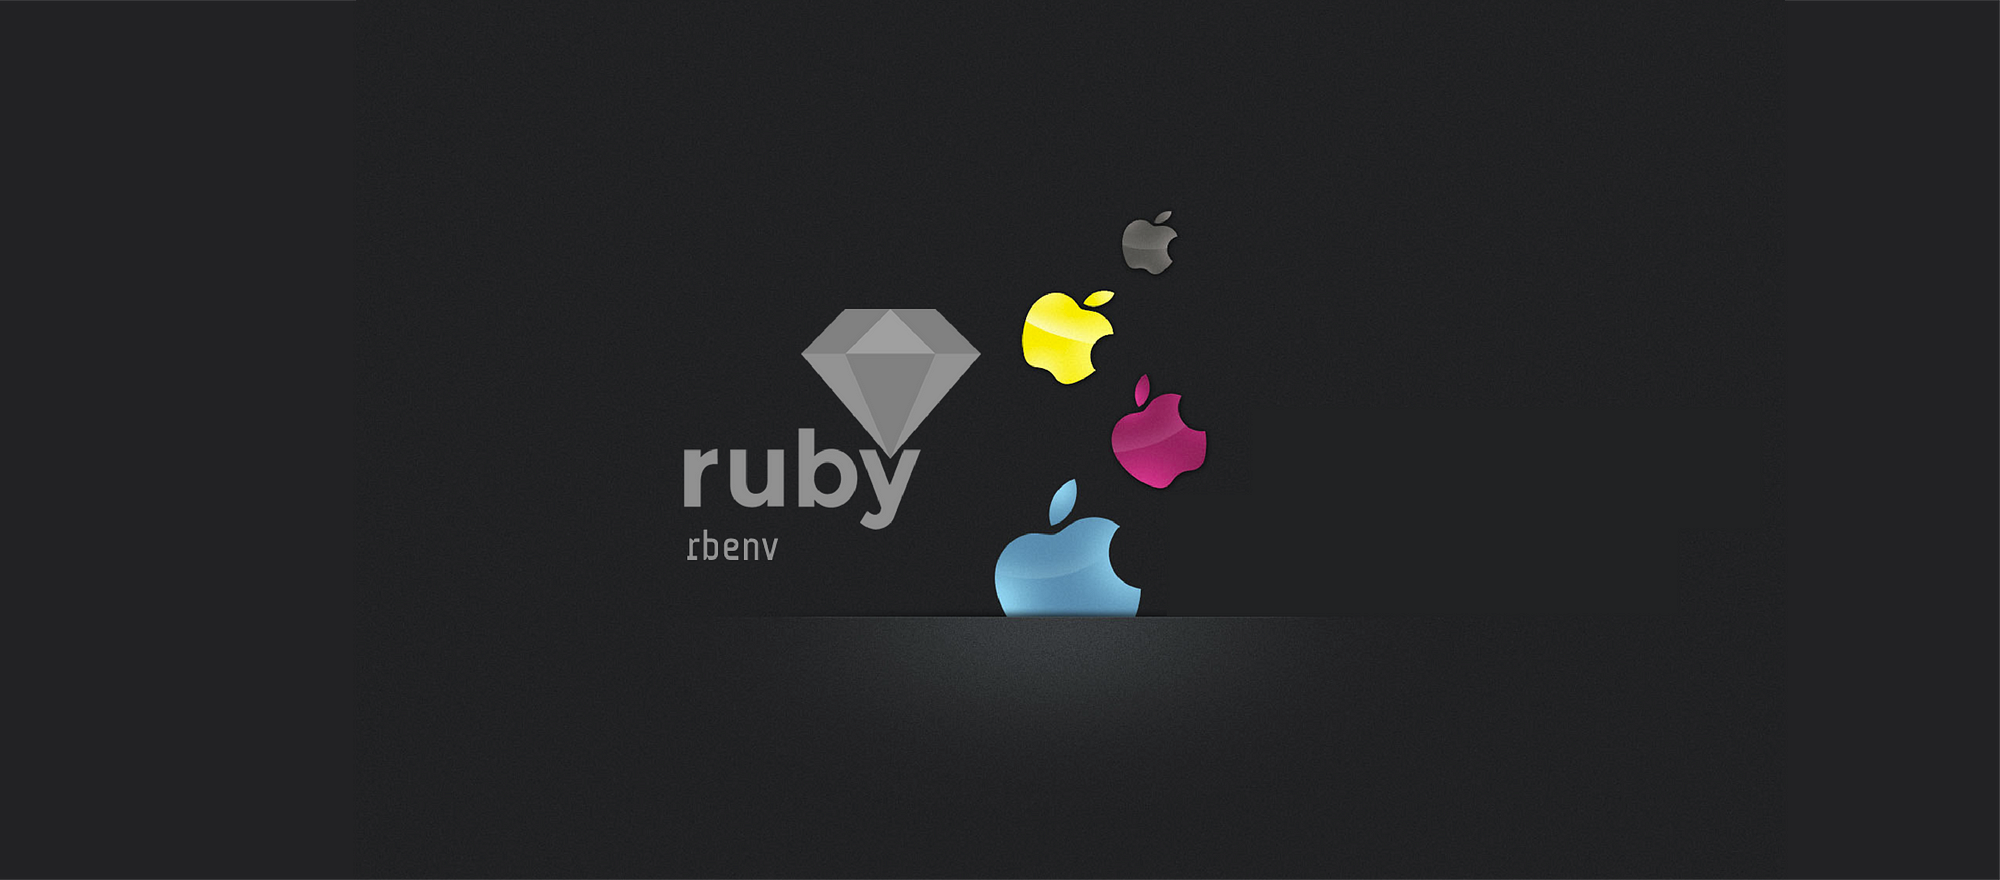 Usando Ruby em (quase) qualquer lugar